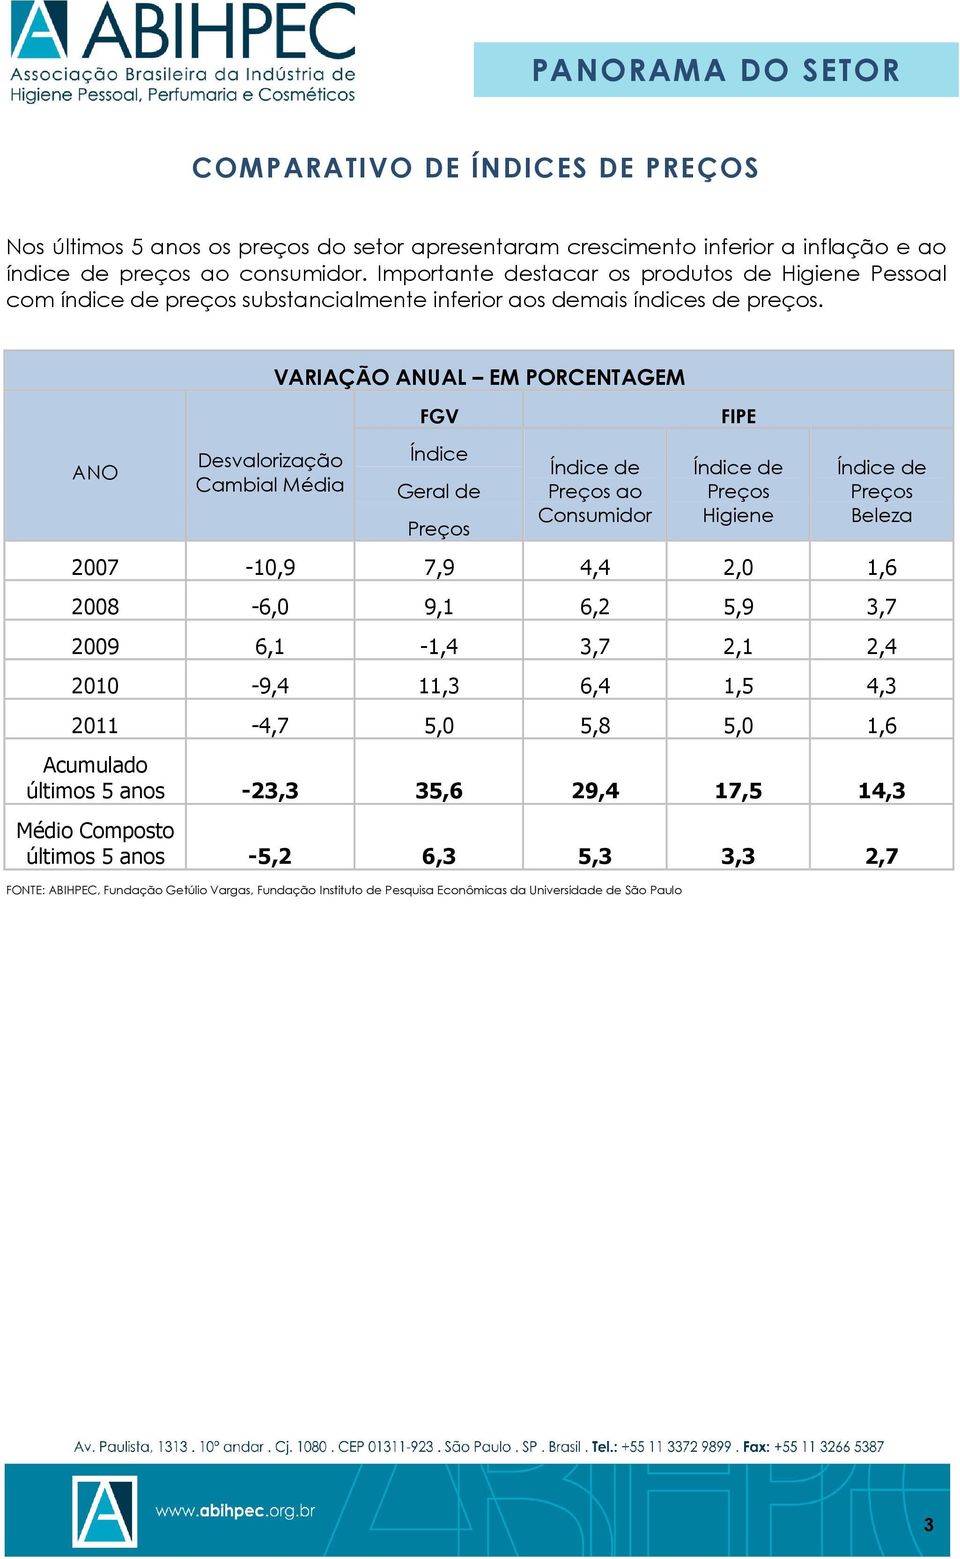 ANO Desvalorização Cambial Média VARIAÇÃO ANUAL EM PORCENTAGEM FGV Índice Geral de Preços Índice de Preços ao Consumidor FIPE Índice de Preços Higiene Índice de Preços Beleza 2007-10,9 7,9 4,4 2,0